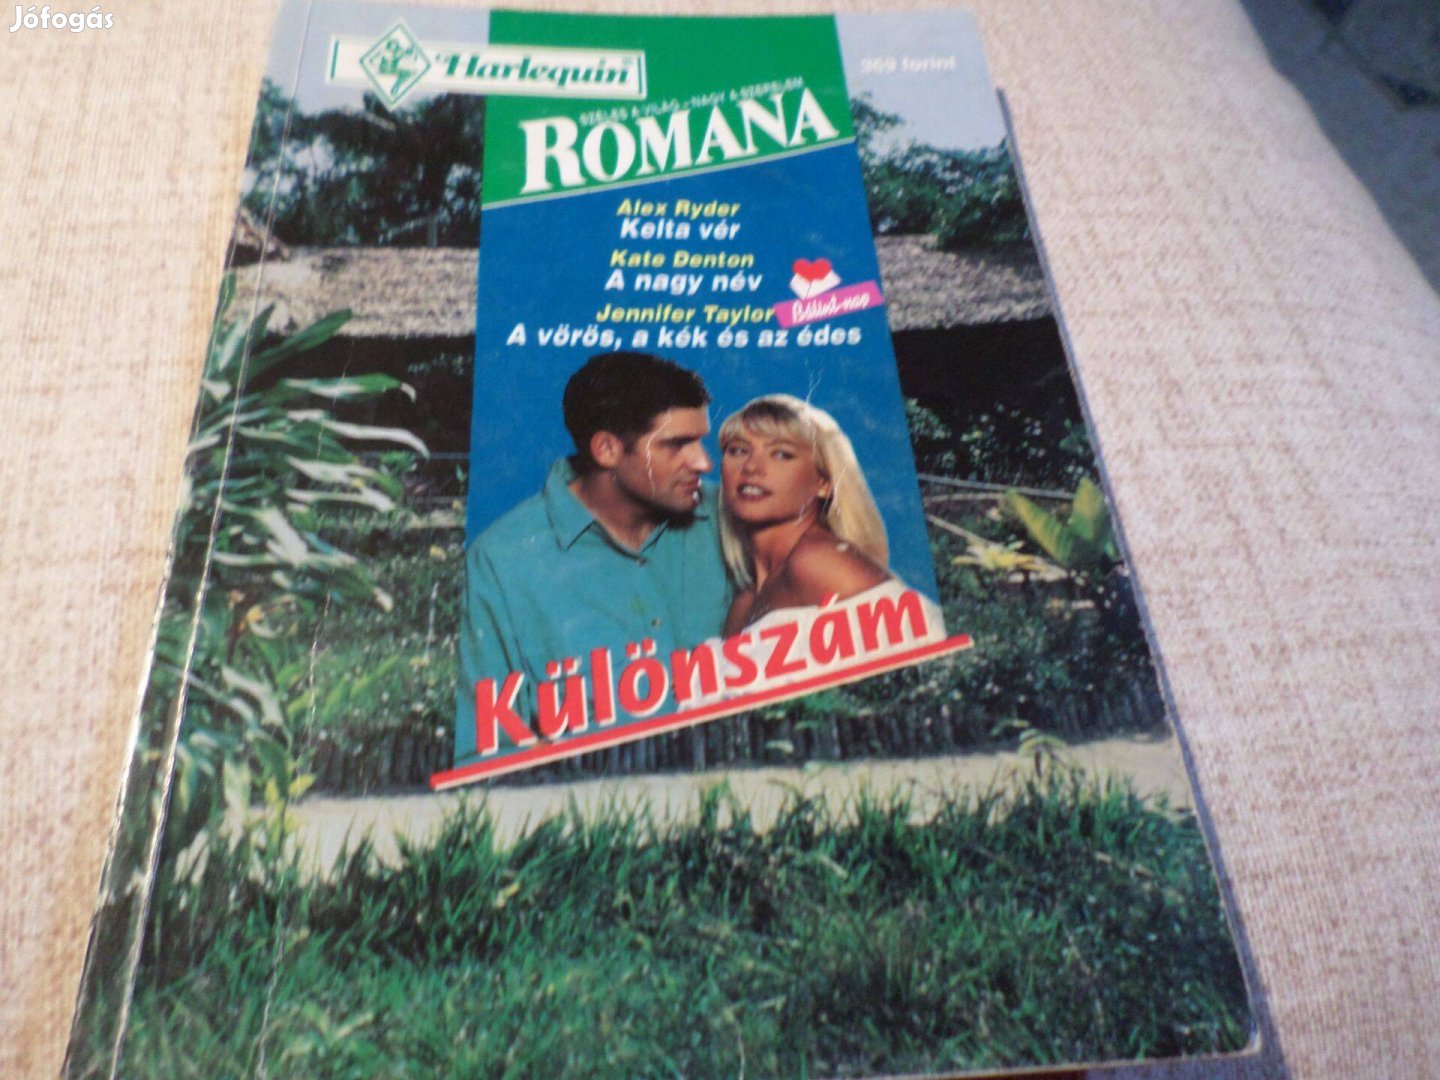 Romana 3 történet egy kötetben 1996/1.Alex Ryder Kelta vér, Romantikus